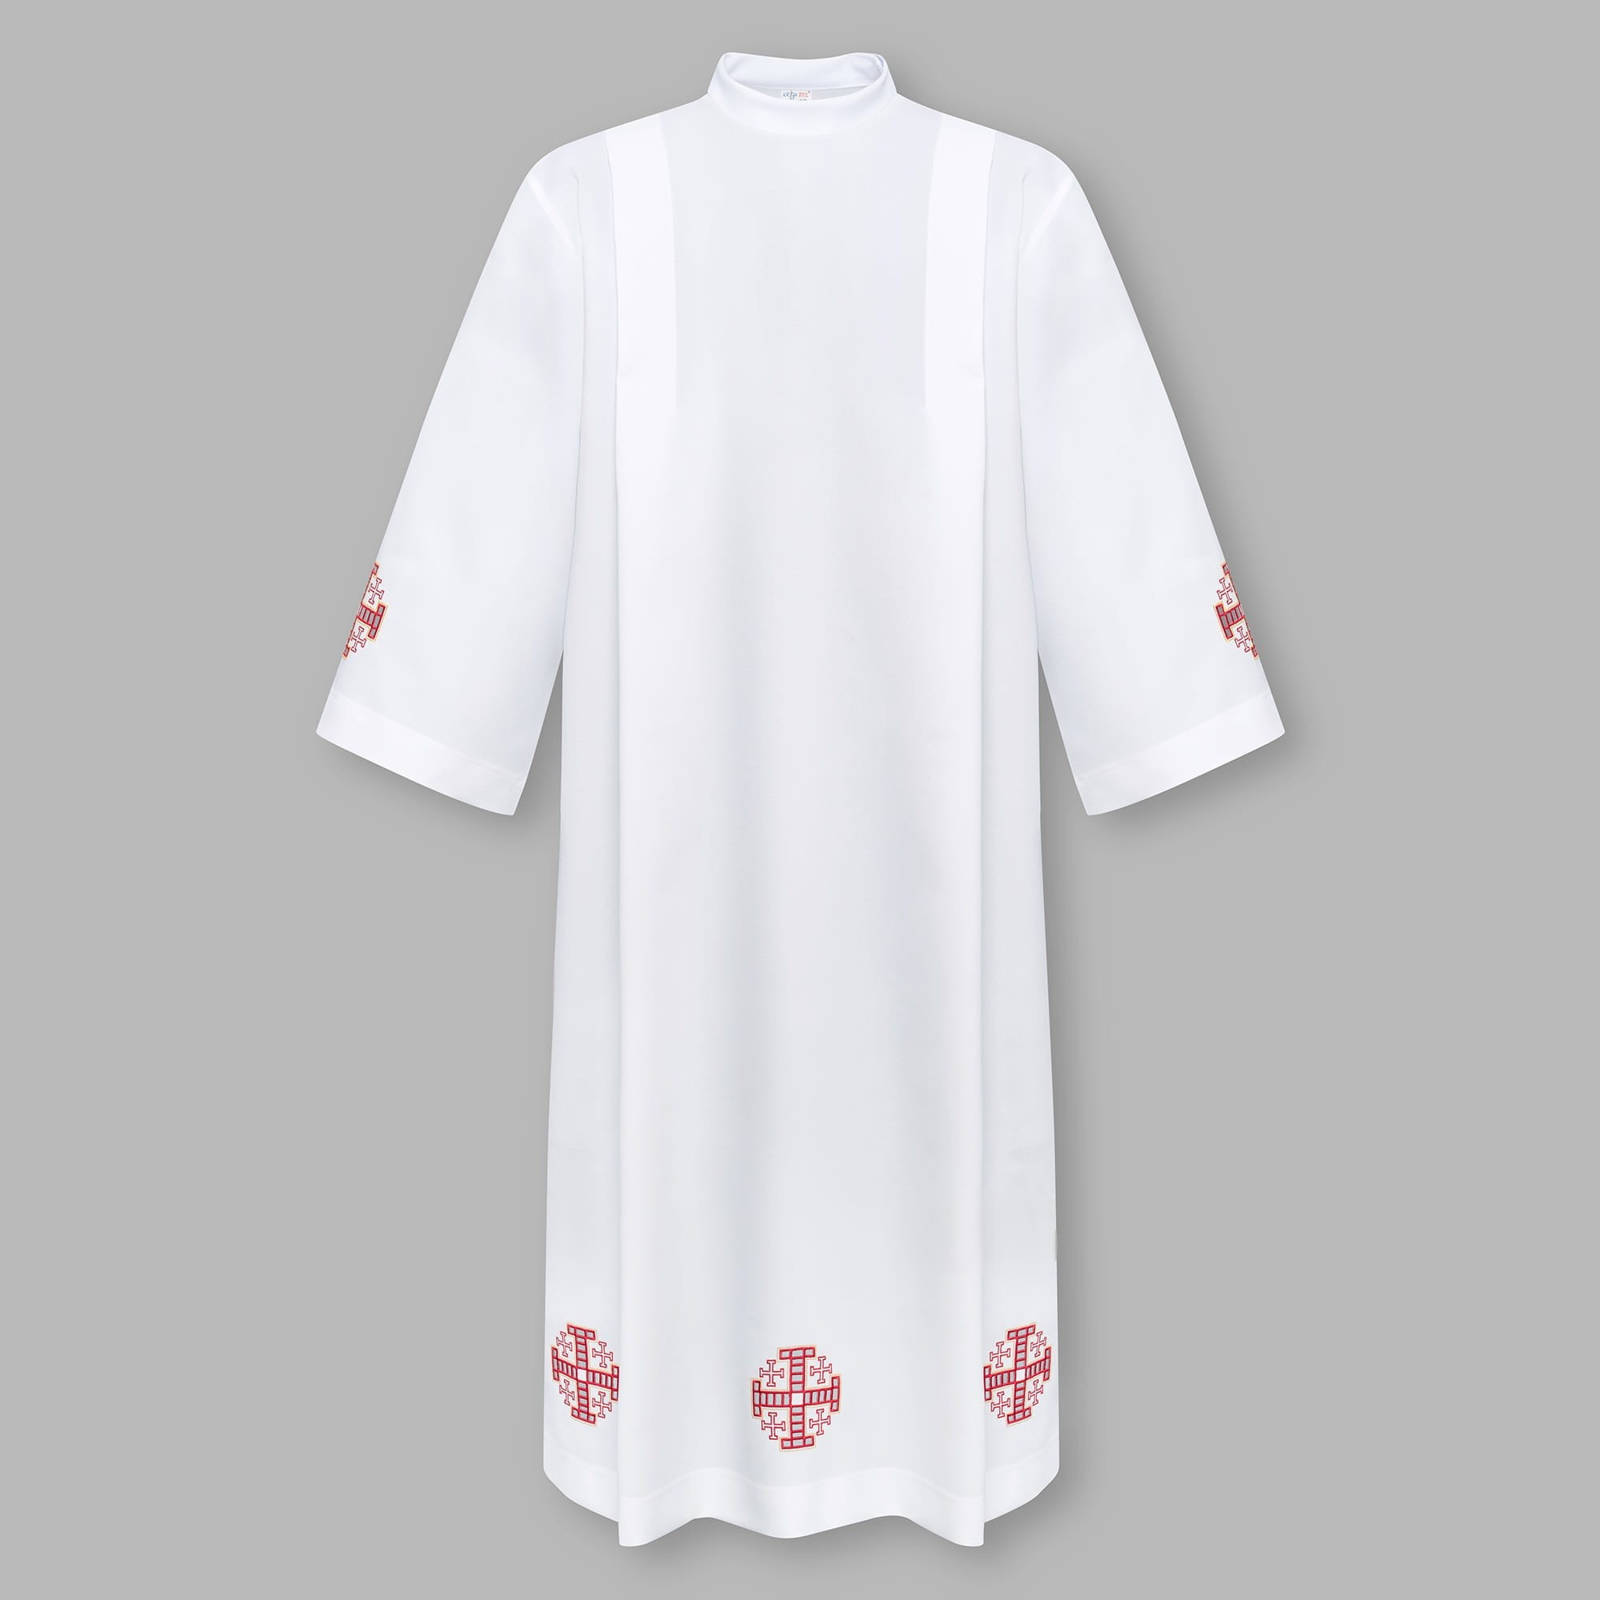 Alba kapłańska haftowana z motywem krzyża i suwakiem na ramieniu